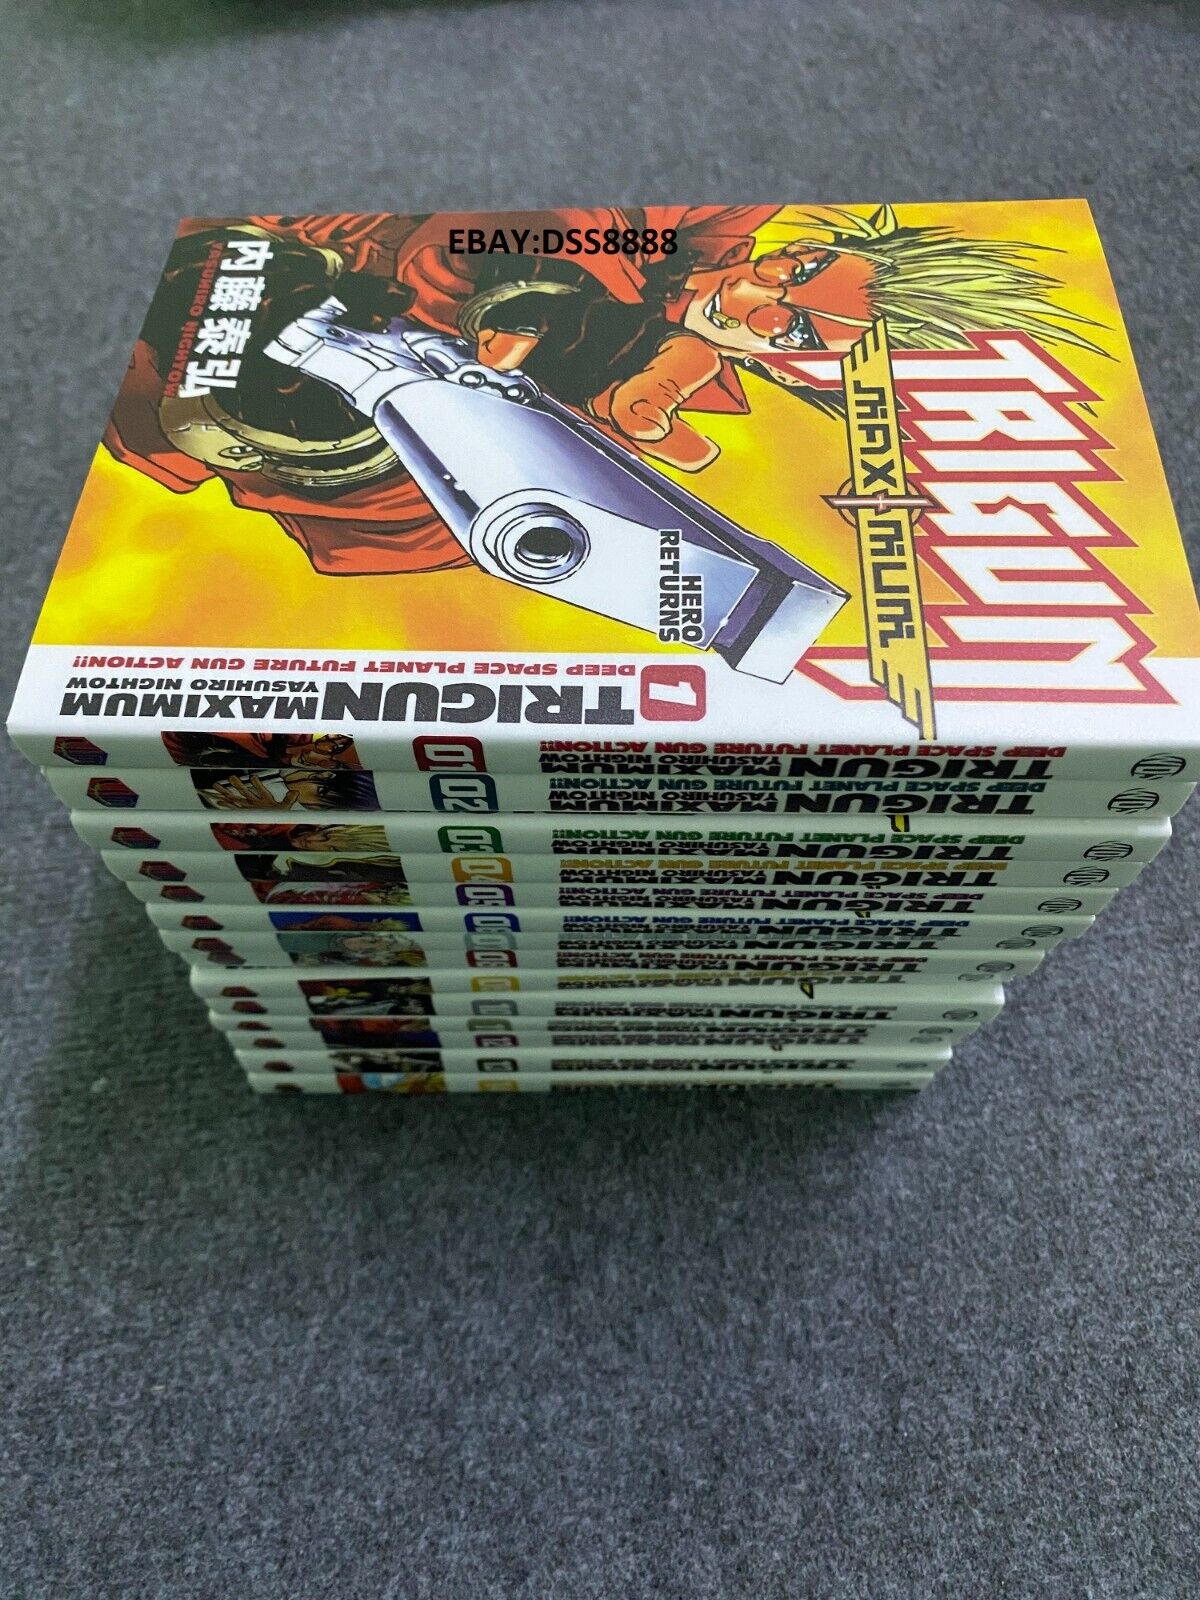 Trigun Maximum Manga Comic English Version Full Set Vol.1-14 Ysuhiro Nightow~NEW